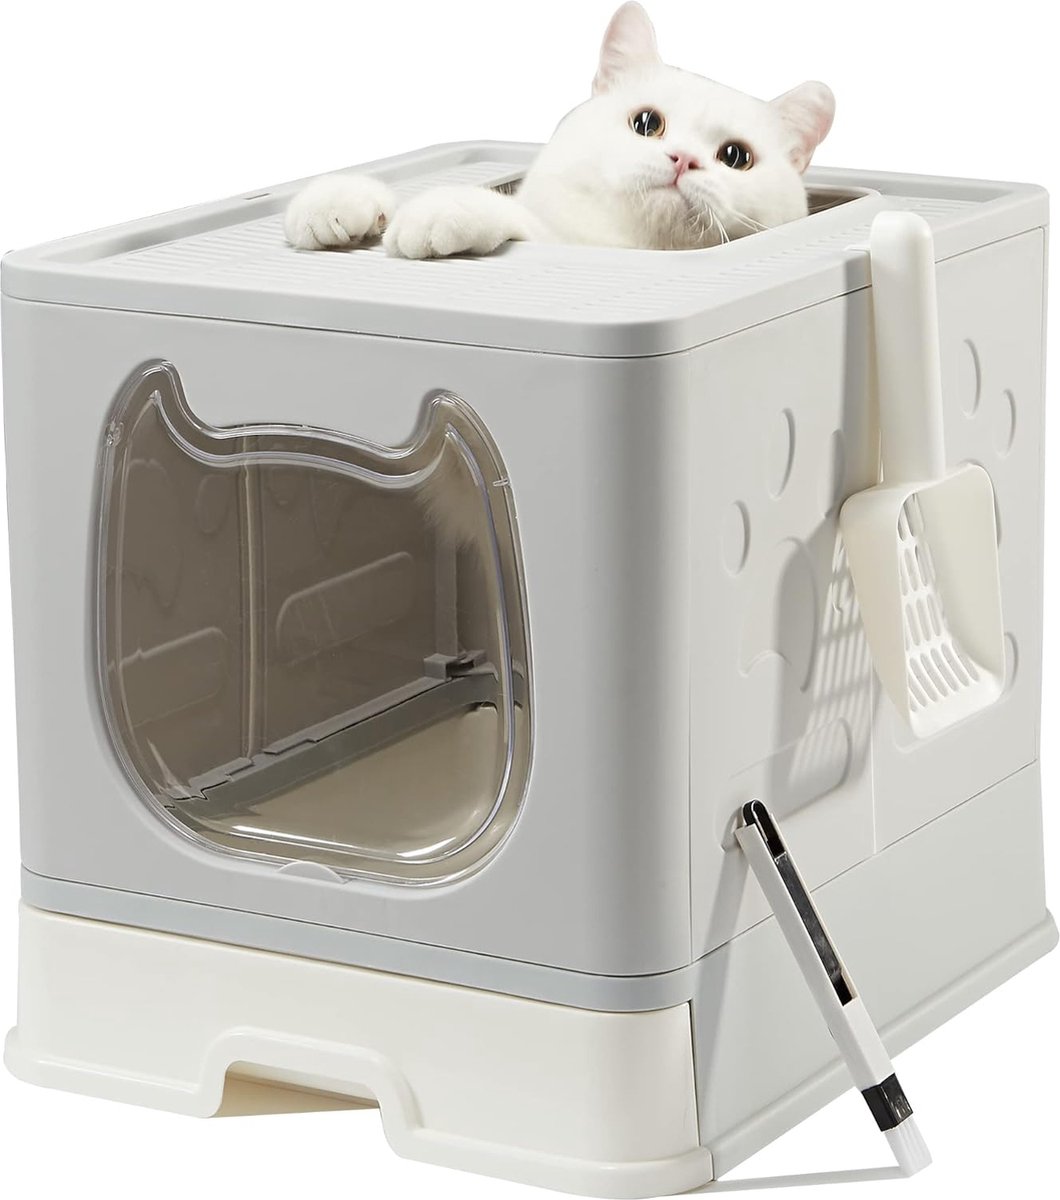 Kattenbak, opvouwbare kattenbak met deksel, huisdiertoilet inclusief schep en schone borstel, gemakkelijk schoon te maken kattenbak, grijs